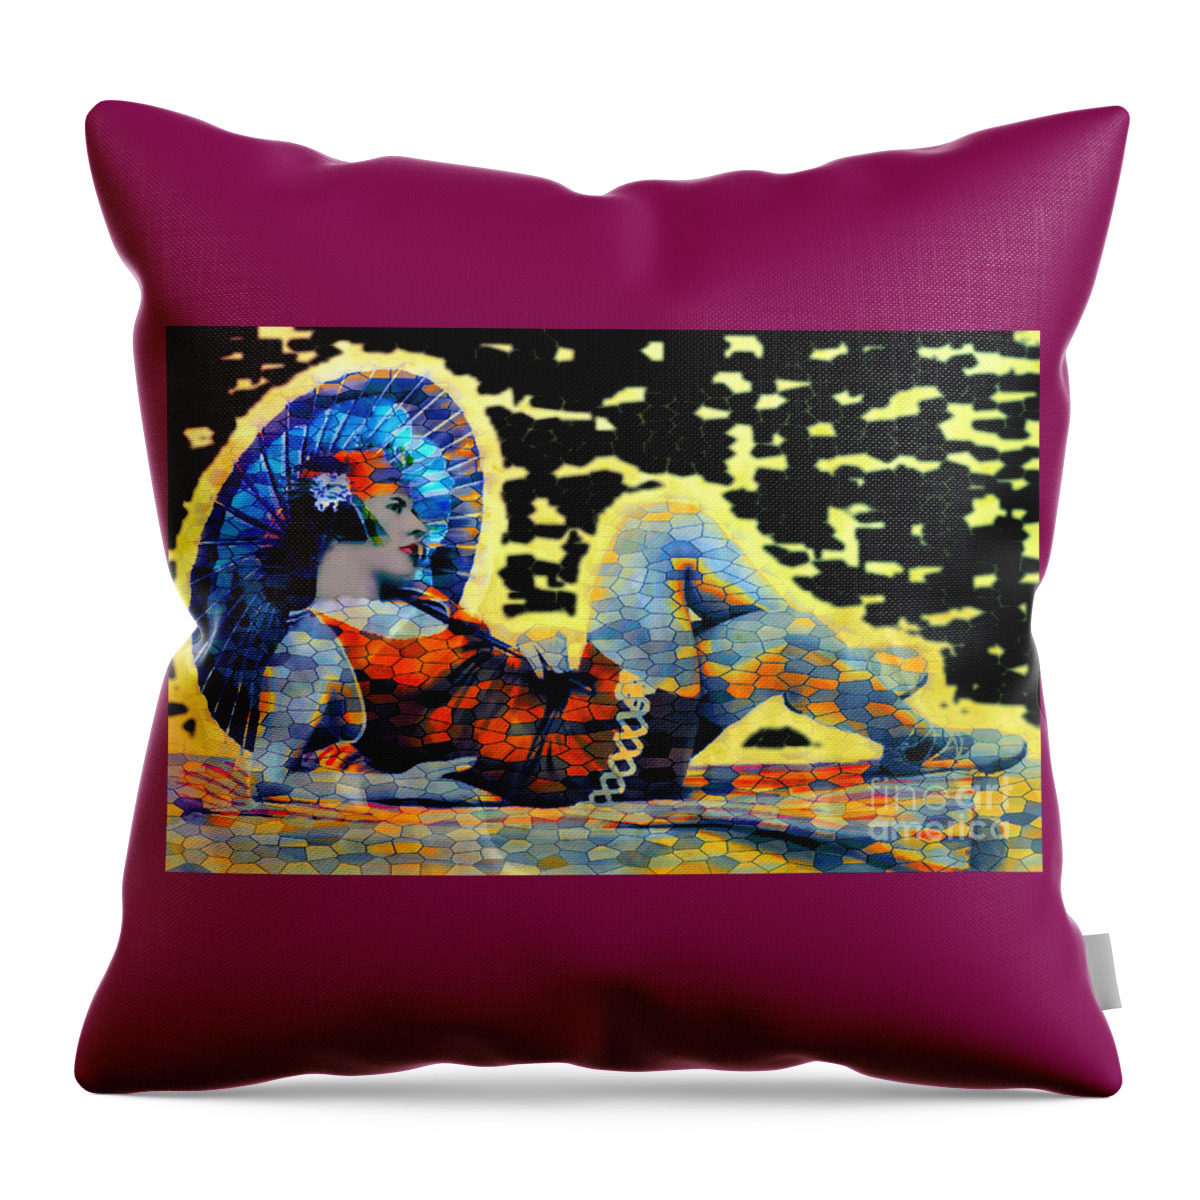 Pop Art Throw Pillow featuring the digital art Beach Girl 1920s - Pop art by Ian Gledhill